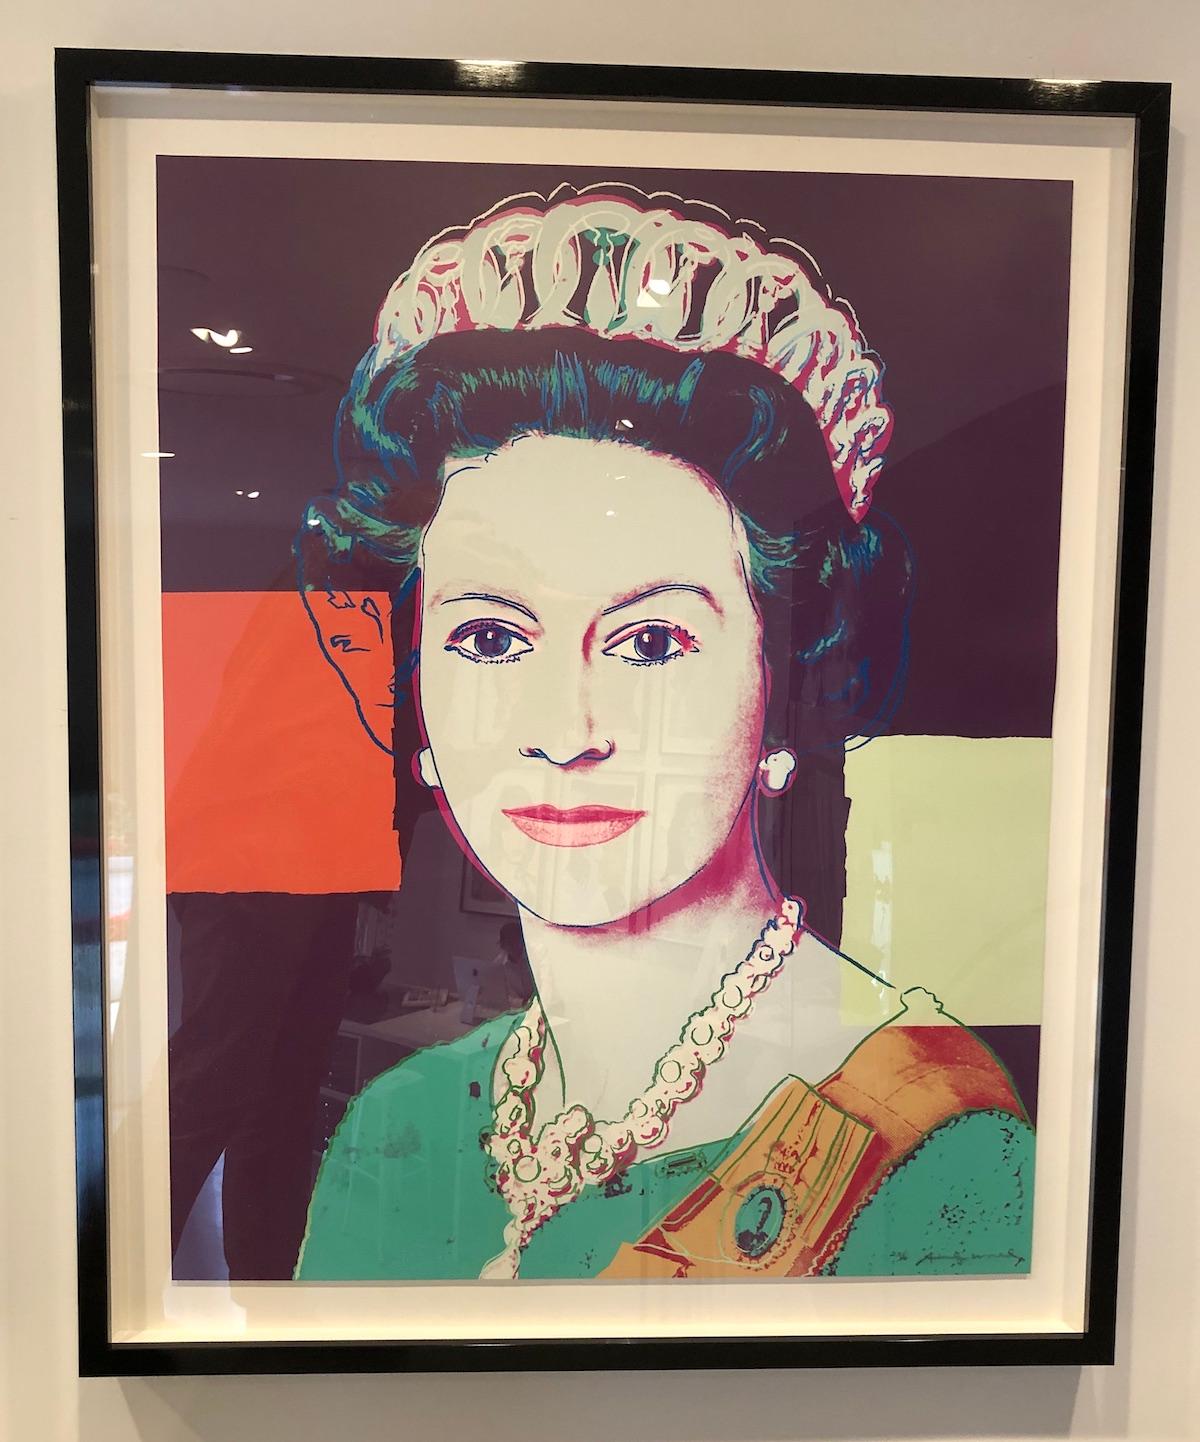 Queen Elizabeth II of the United Kingdom (FS II.335) - Print by Andy Warhol